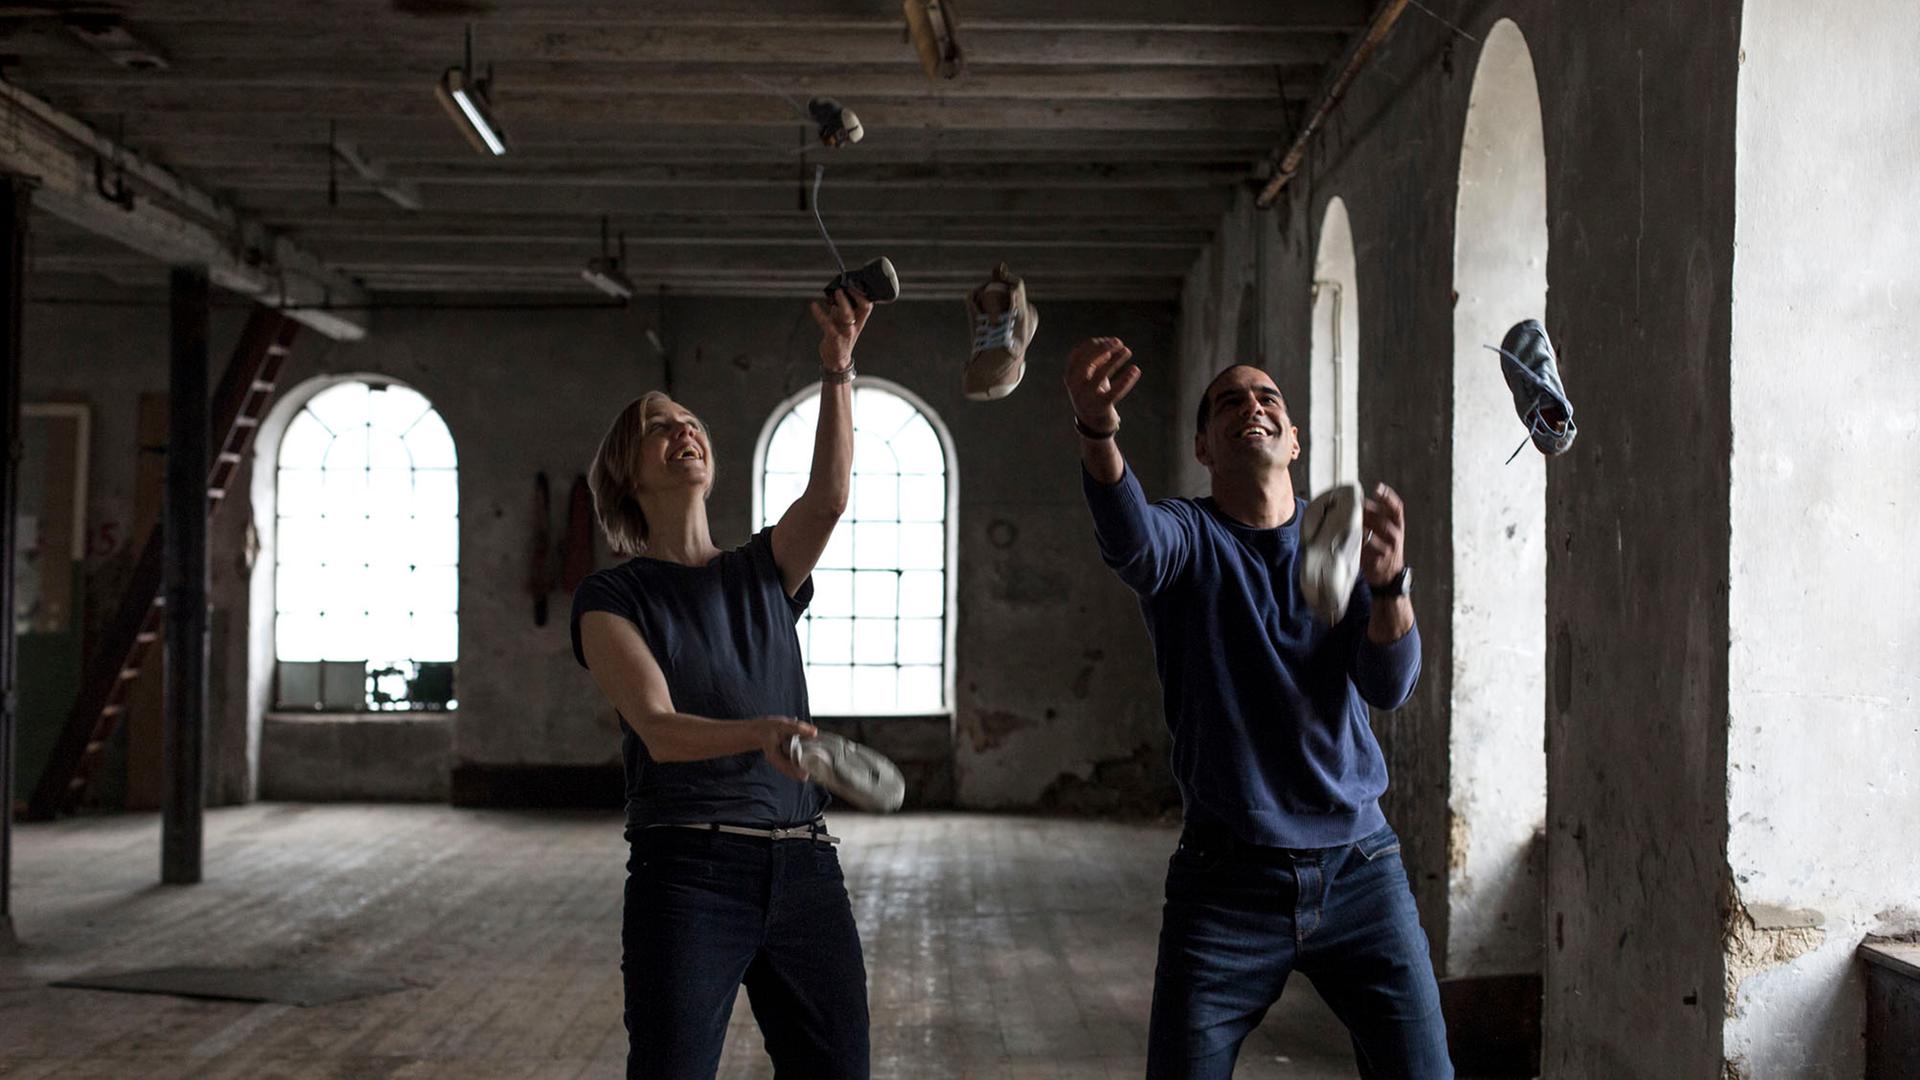 Anna und Ran Yona stehen in einem großen Raum und jonglieren mit Schuhen